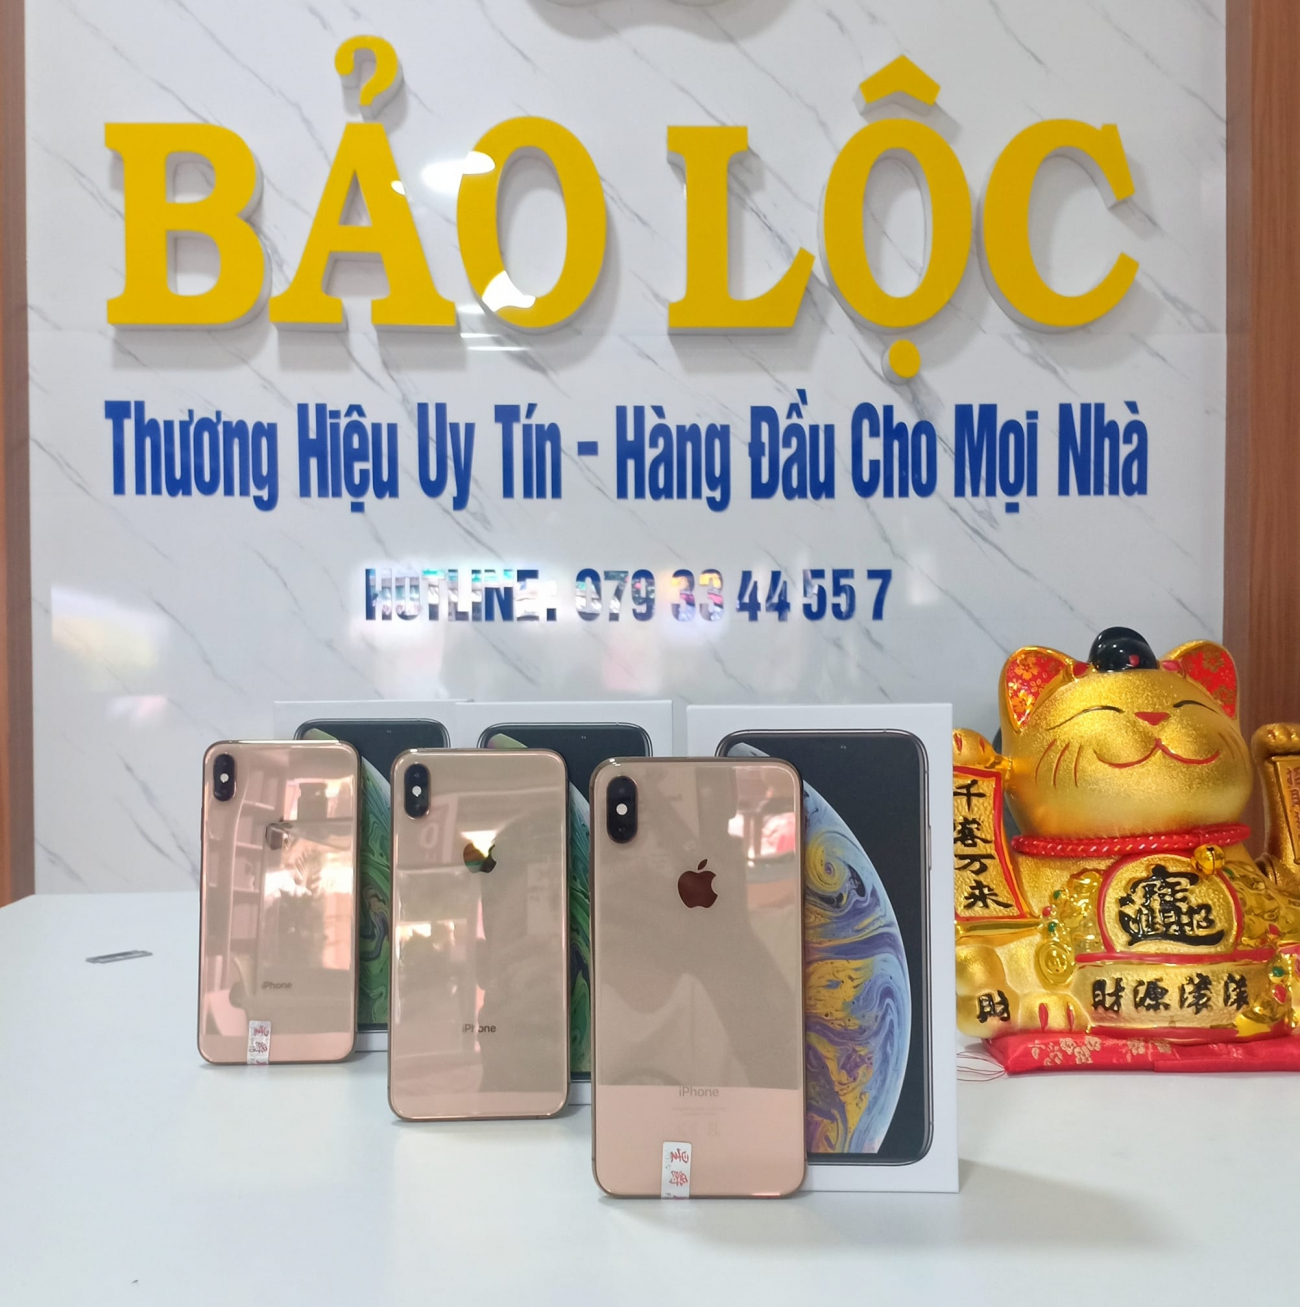 Cửa hàng phụ kiện điện thoại Bảo Lộc Mobile